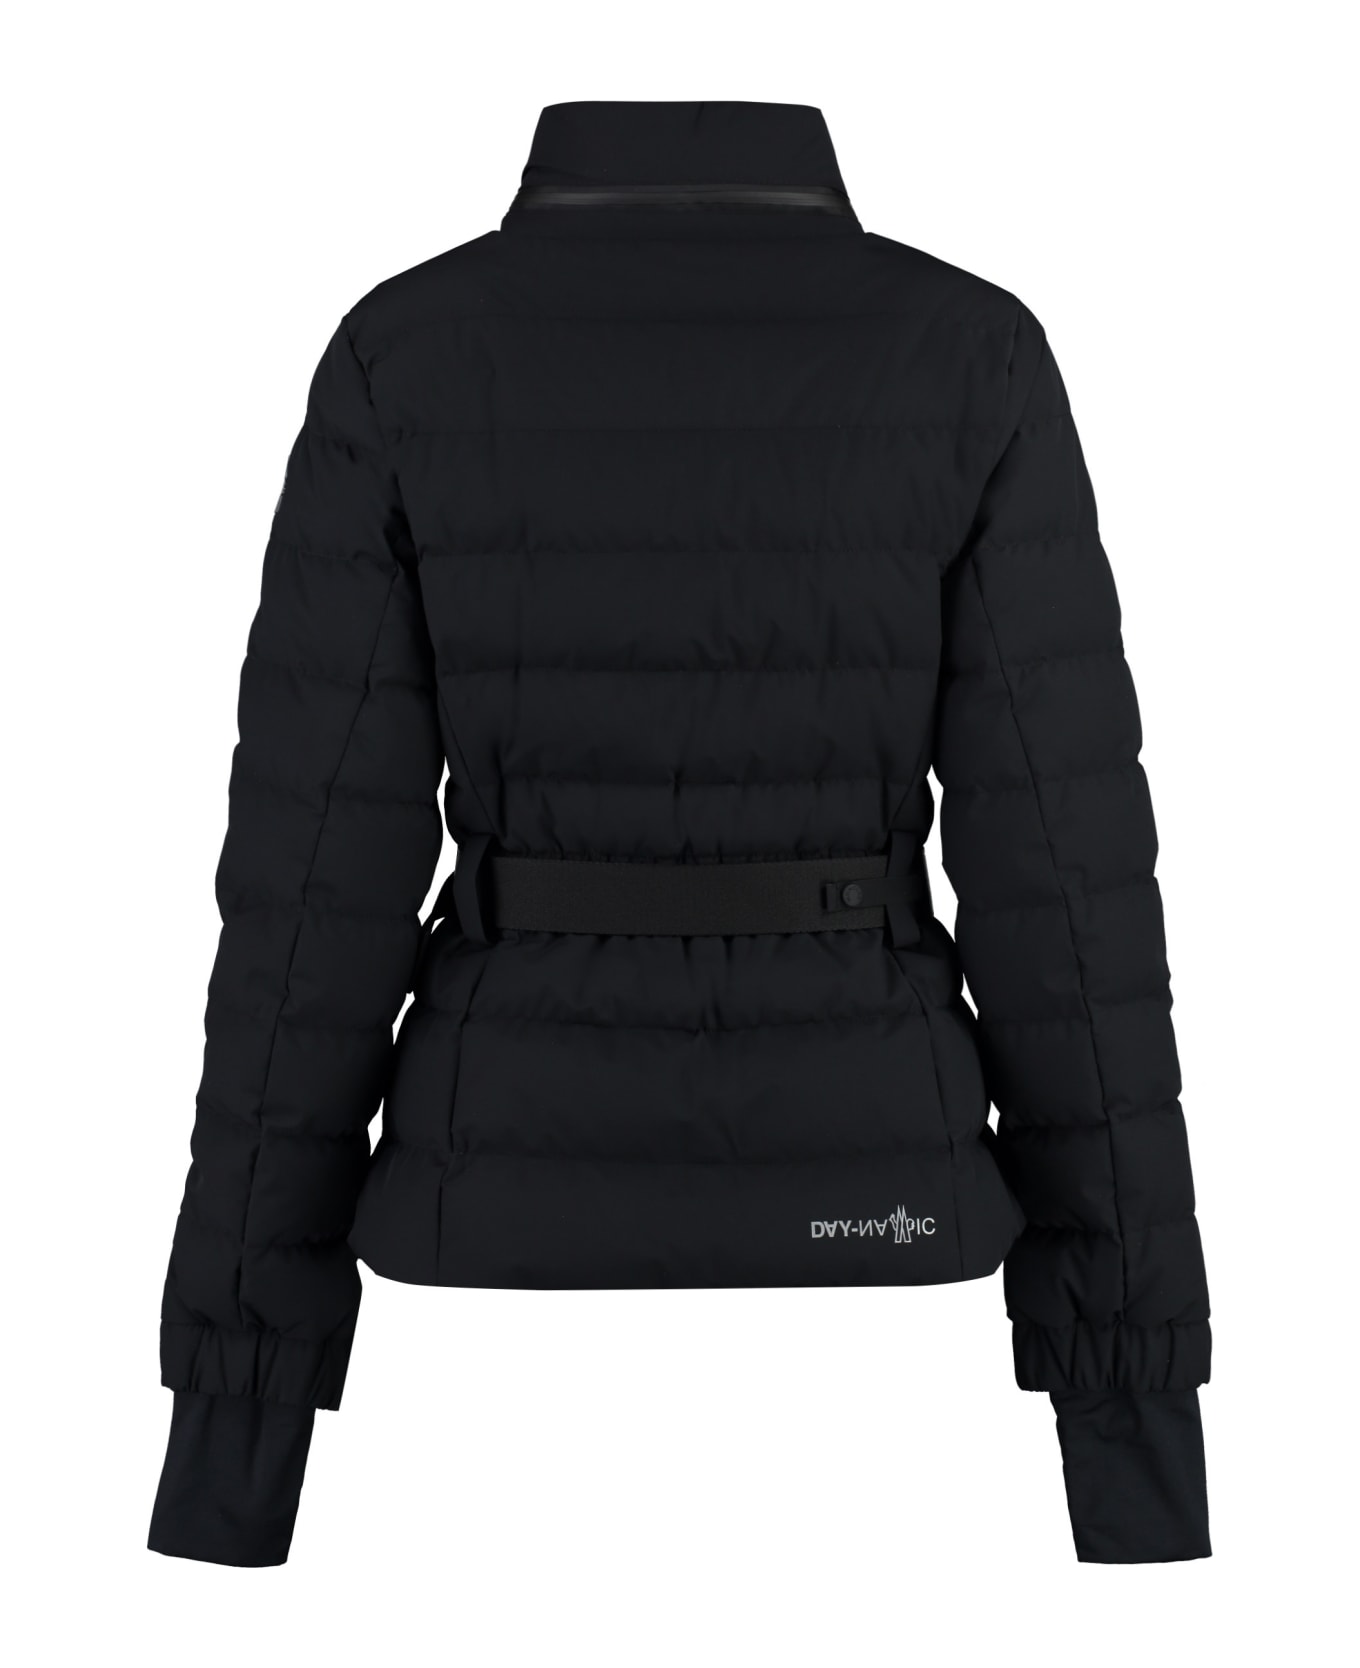 Moncler Grenoble Bettex Ski Down Jacket - Black